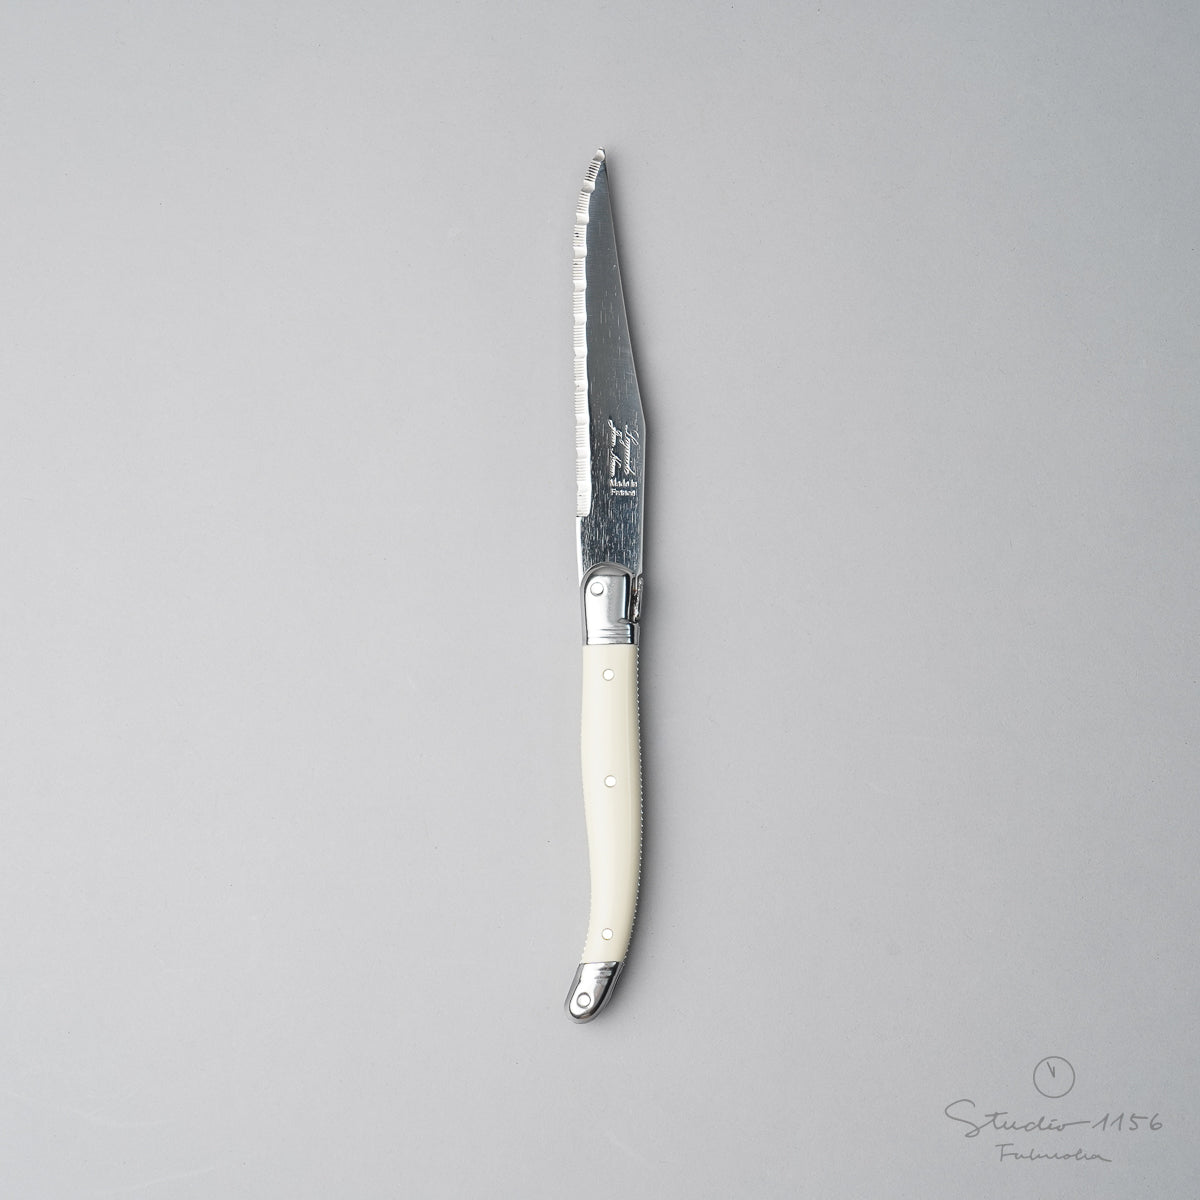 ジャン・ネロン ライヨール ステーキナイフ 23cm Ivory(アイボリー) Cutlery-neron Studio1156